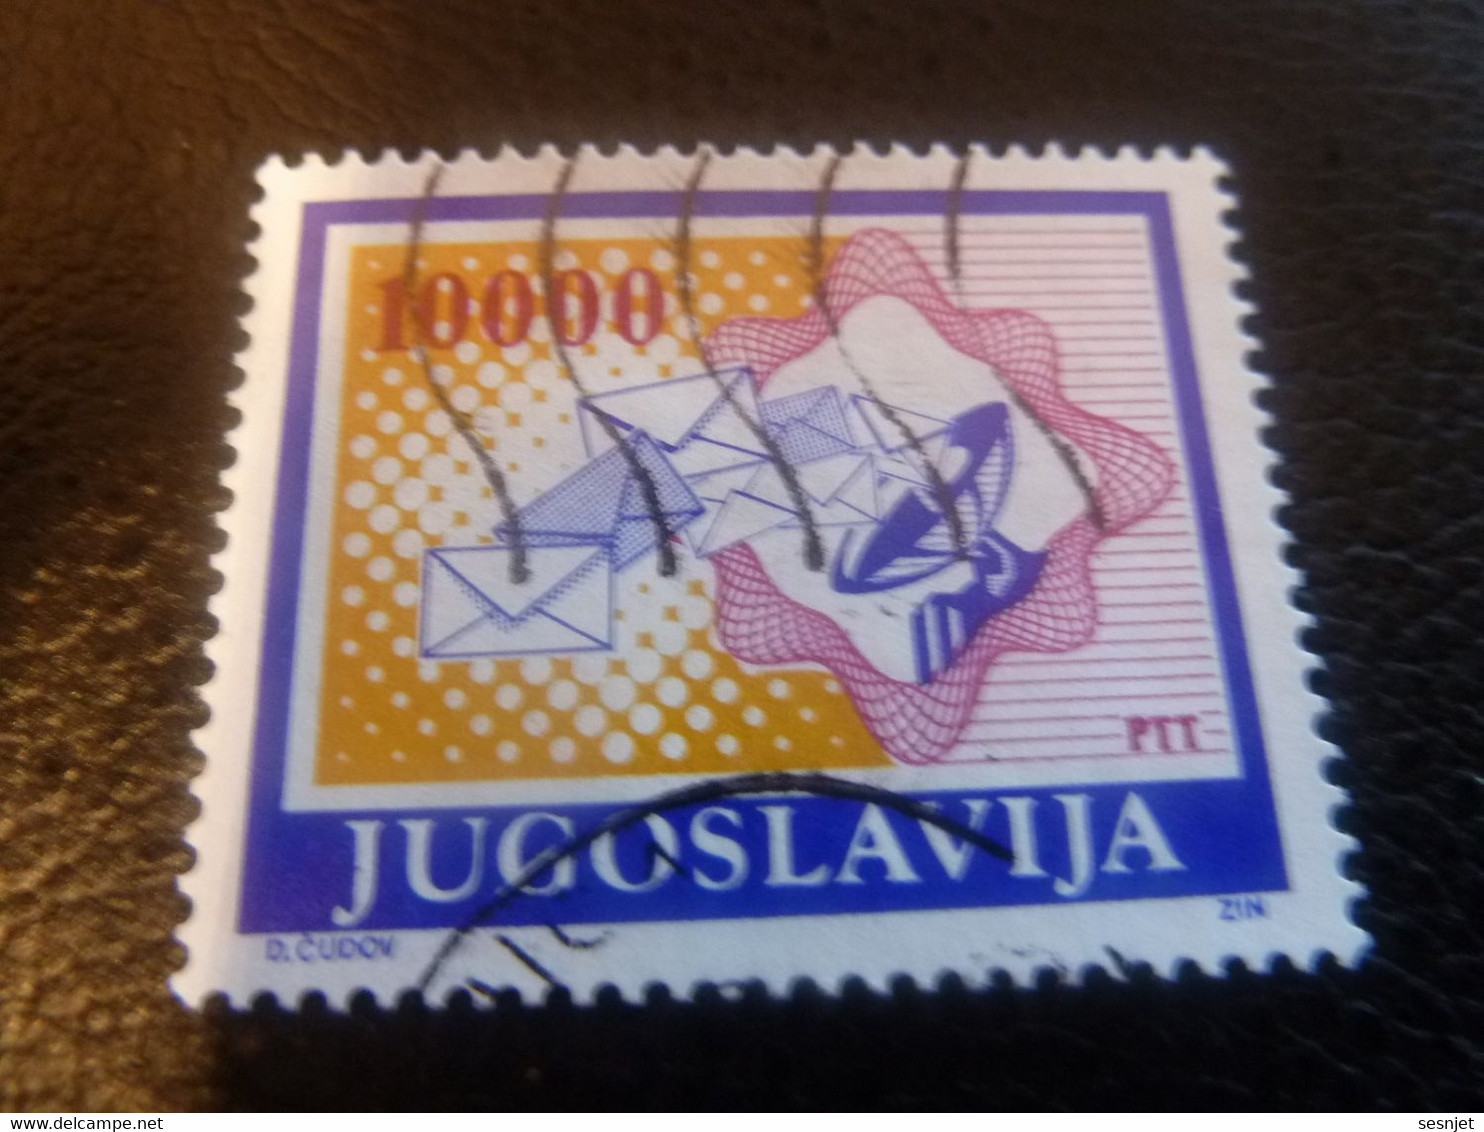 Ptt - Jugoslavija - D Cudov - Val 10000 - Multicolore - Oblitéré - - Gebruikt